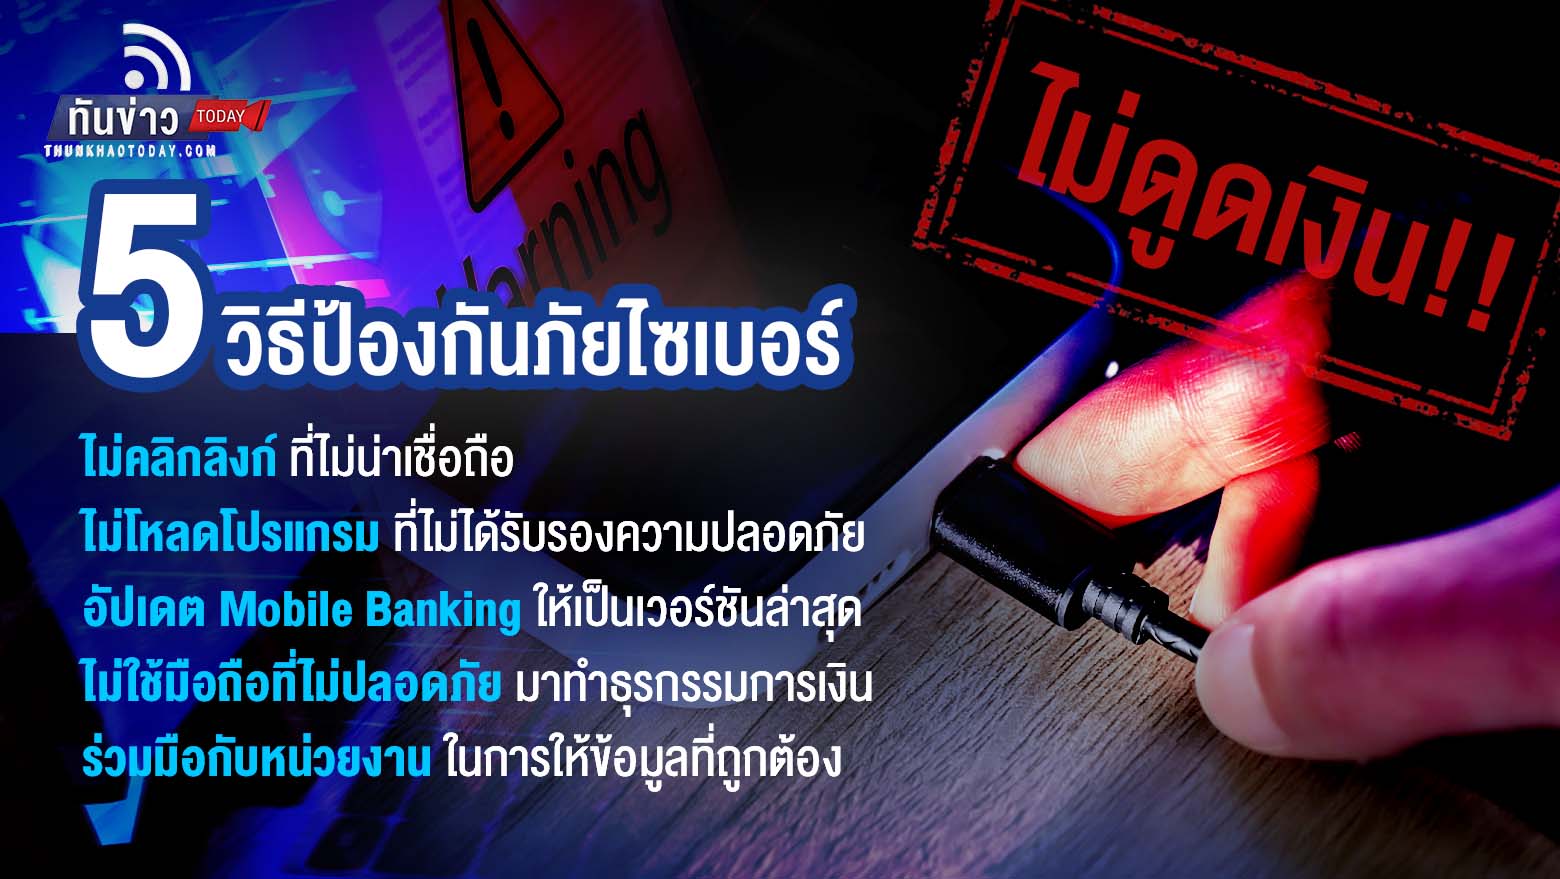 ธนาคารแห่งประเทศไทยชี้แจง สายชาร์จปลอมดูดข้อมูลและโอนเงินออกจากบัญชี ไม่จริง!! แต่เกิดจากถูกมิจฉาชีพหลอกติดตั้ง แอปปลอมที่แฝงมัลแวร์